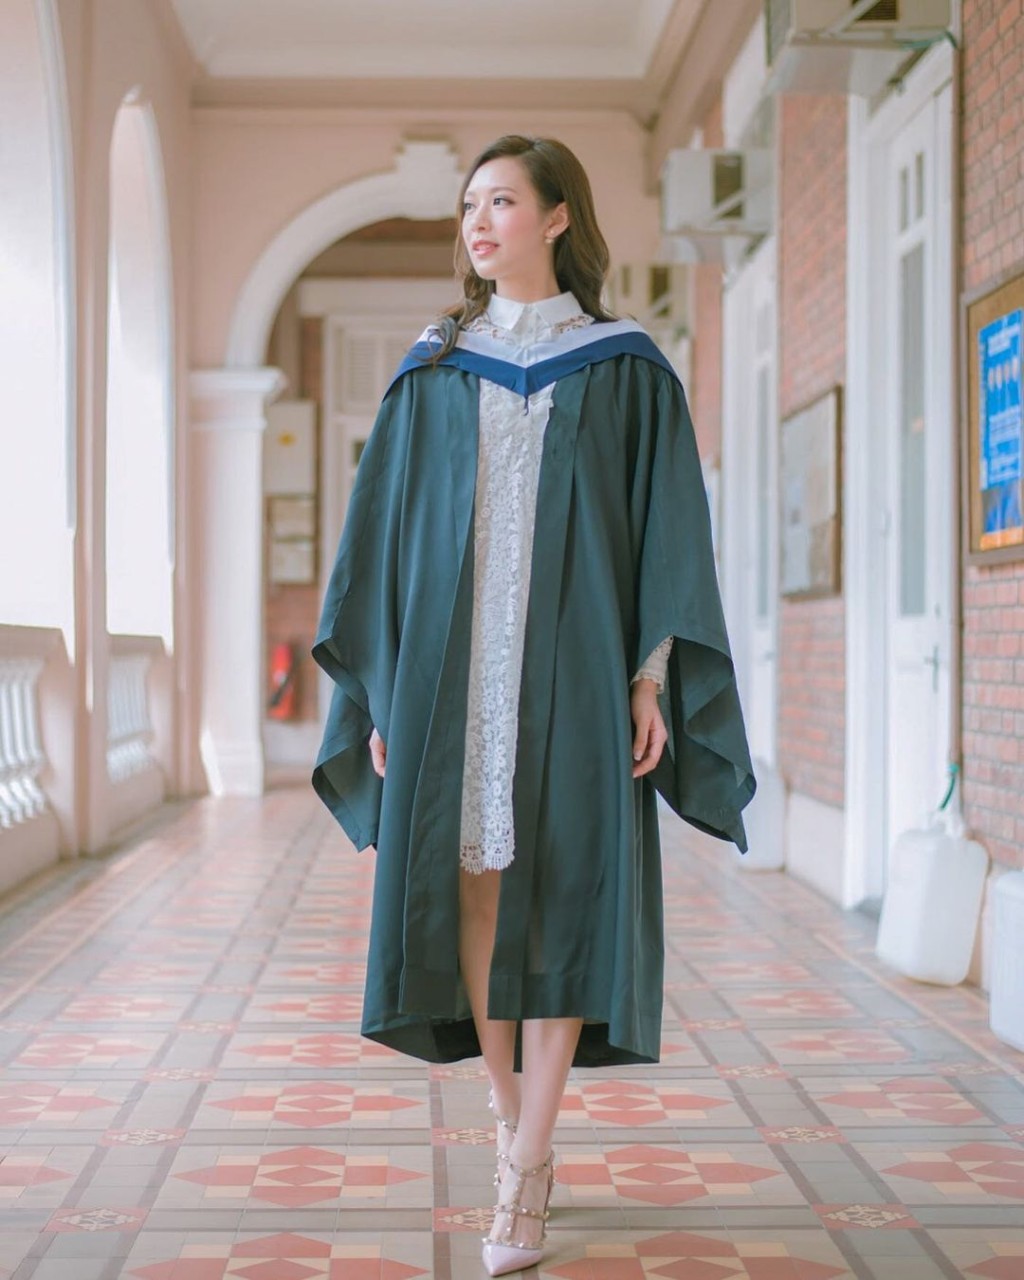 冯盈盈2016年从港大食物及营养学系毕业。